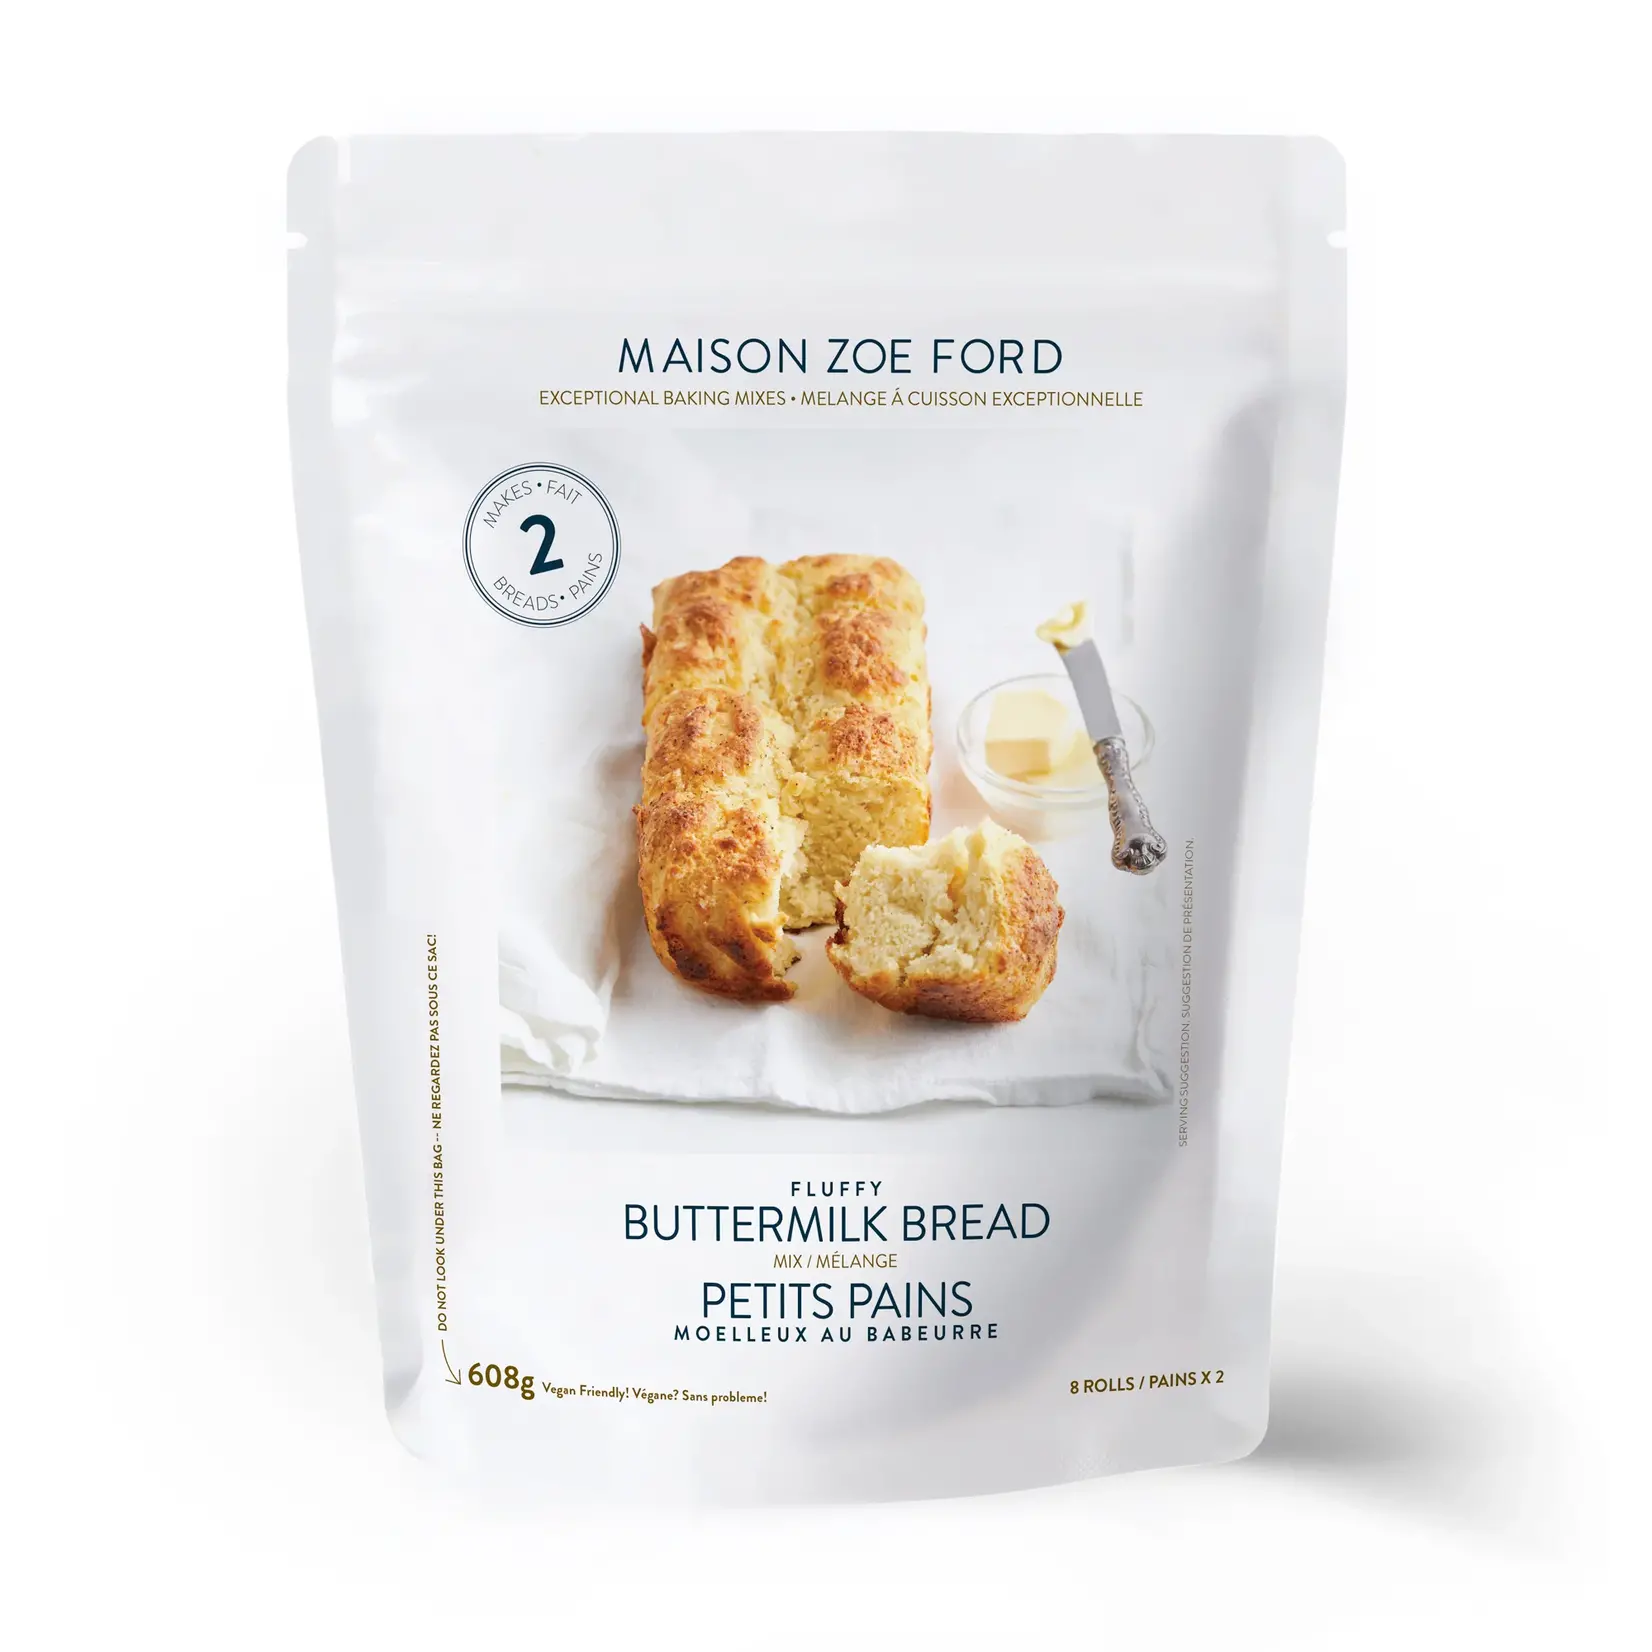 Maison Zoe Ford Fluffy Buttermilk Bread Mix